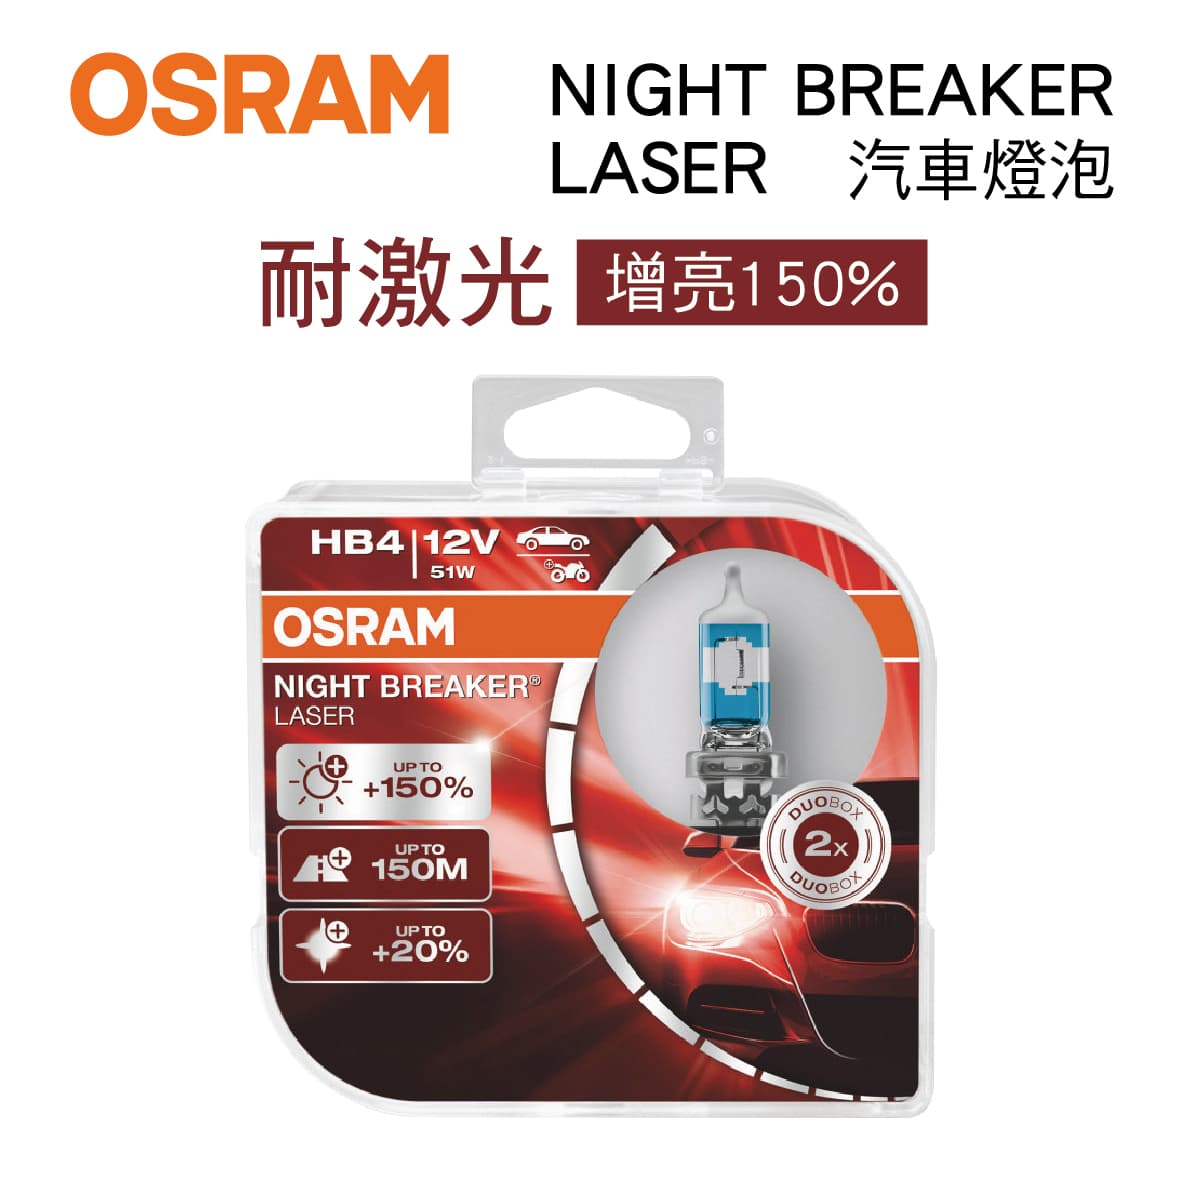 真便宜 OSRAM歐司朗 NIGHT BREAKER LASER 耐激光 增量150% 汽車燈泡(2入)